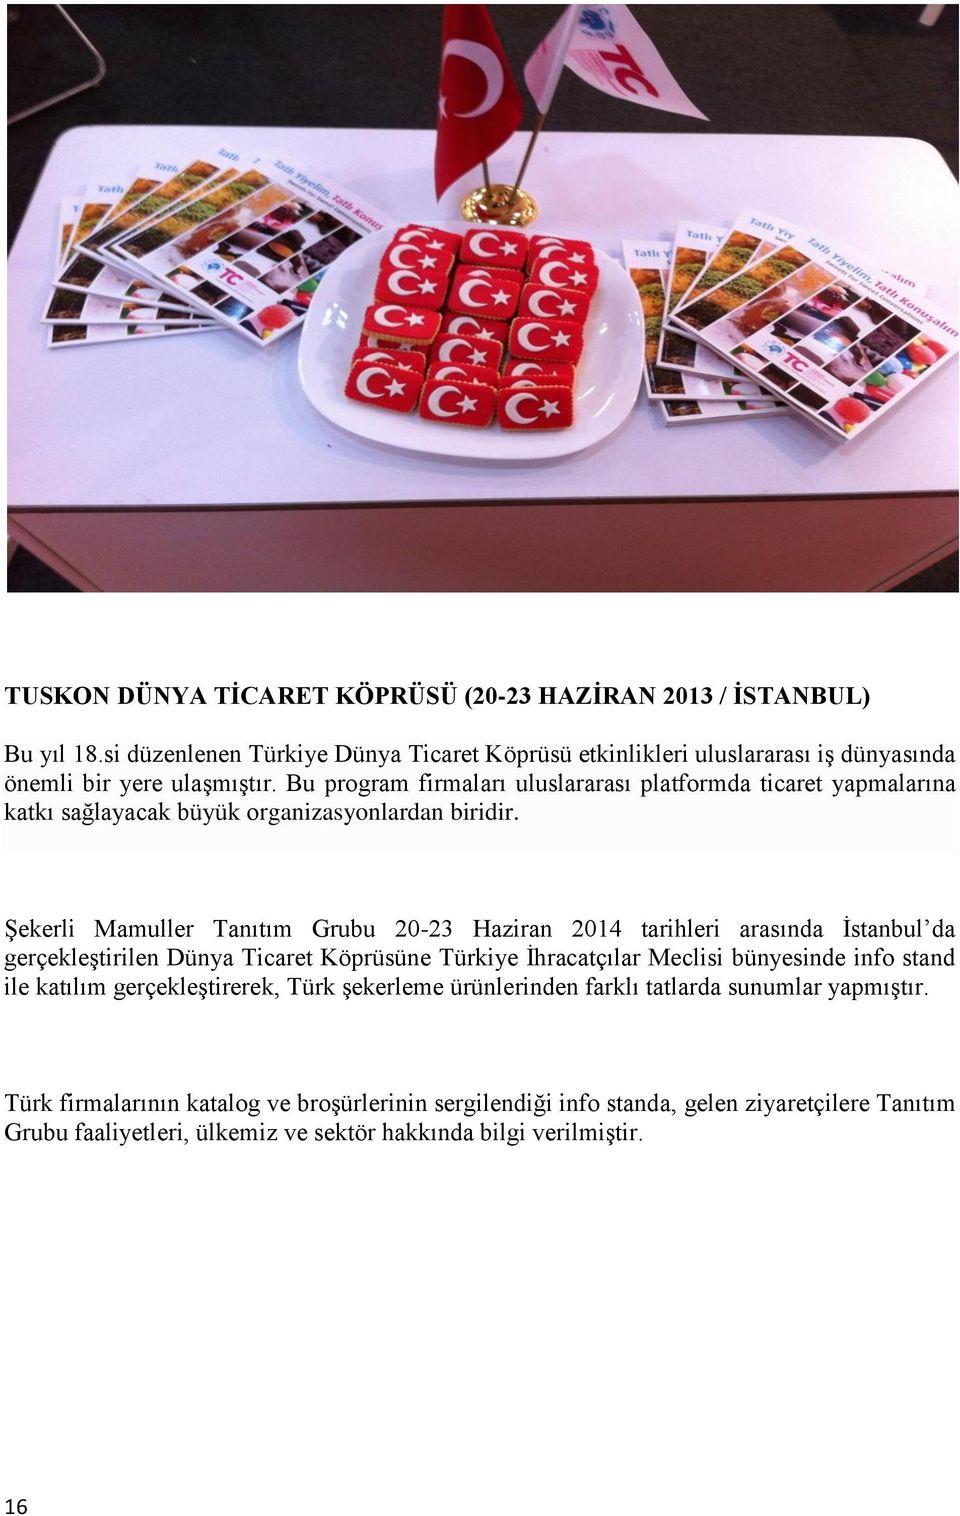 Şekerli Mamuller Tanıtım Grubu 20-23 Haziran 2014 tarihleri arasında İstanbul da gerçekleştirilen Dünya Ticaret Köprüsüne Türkiye İhracatçılar Meclisi bünyesinde info stand ile